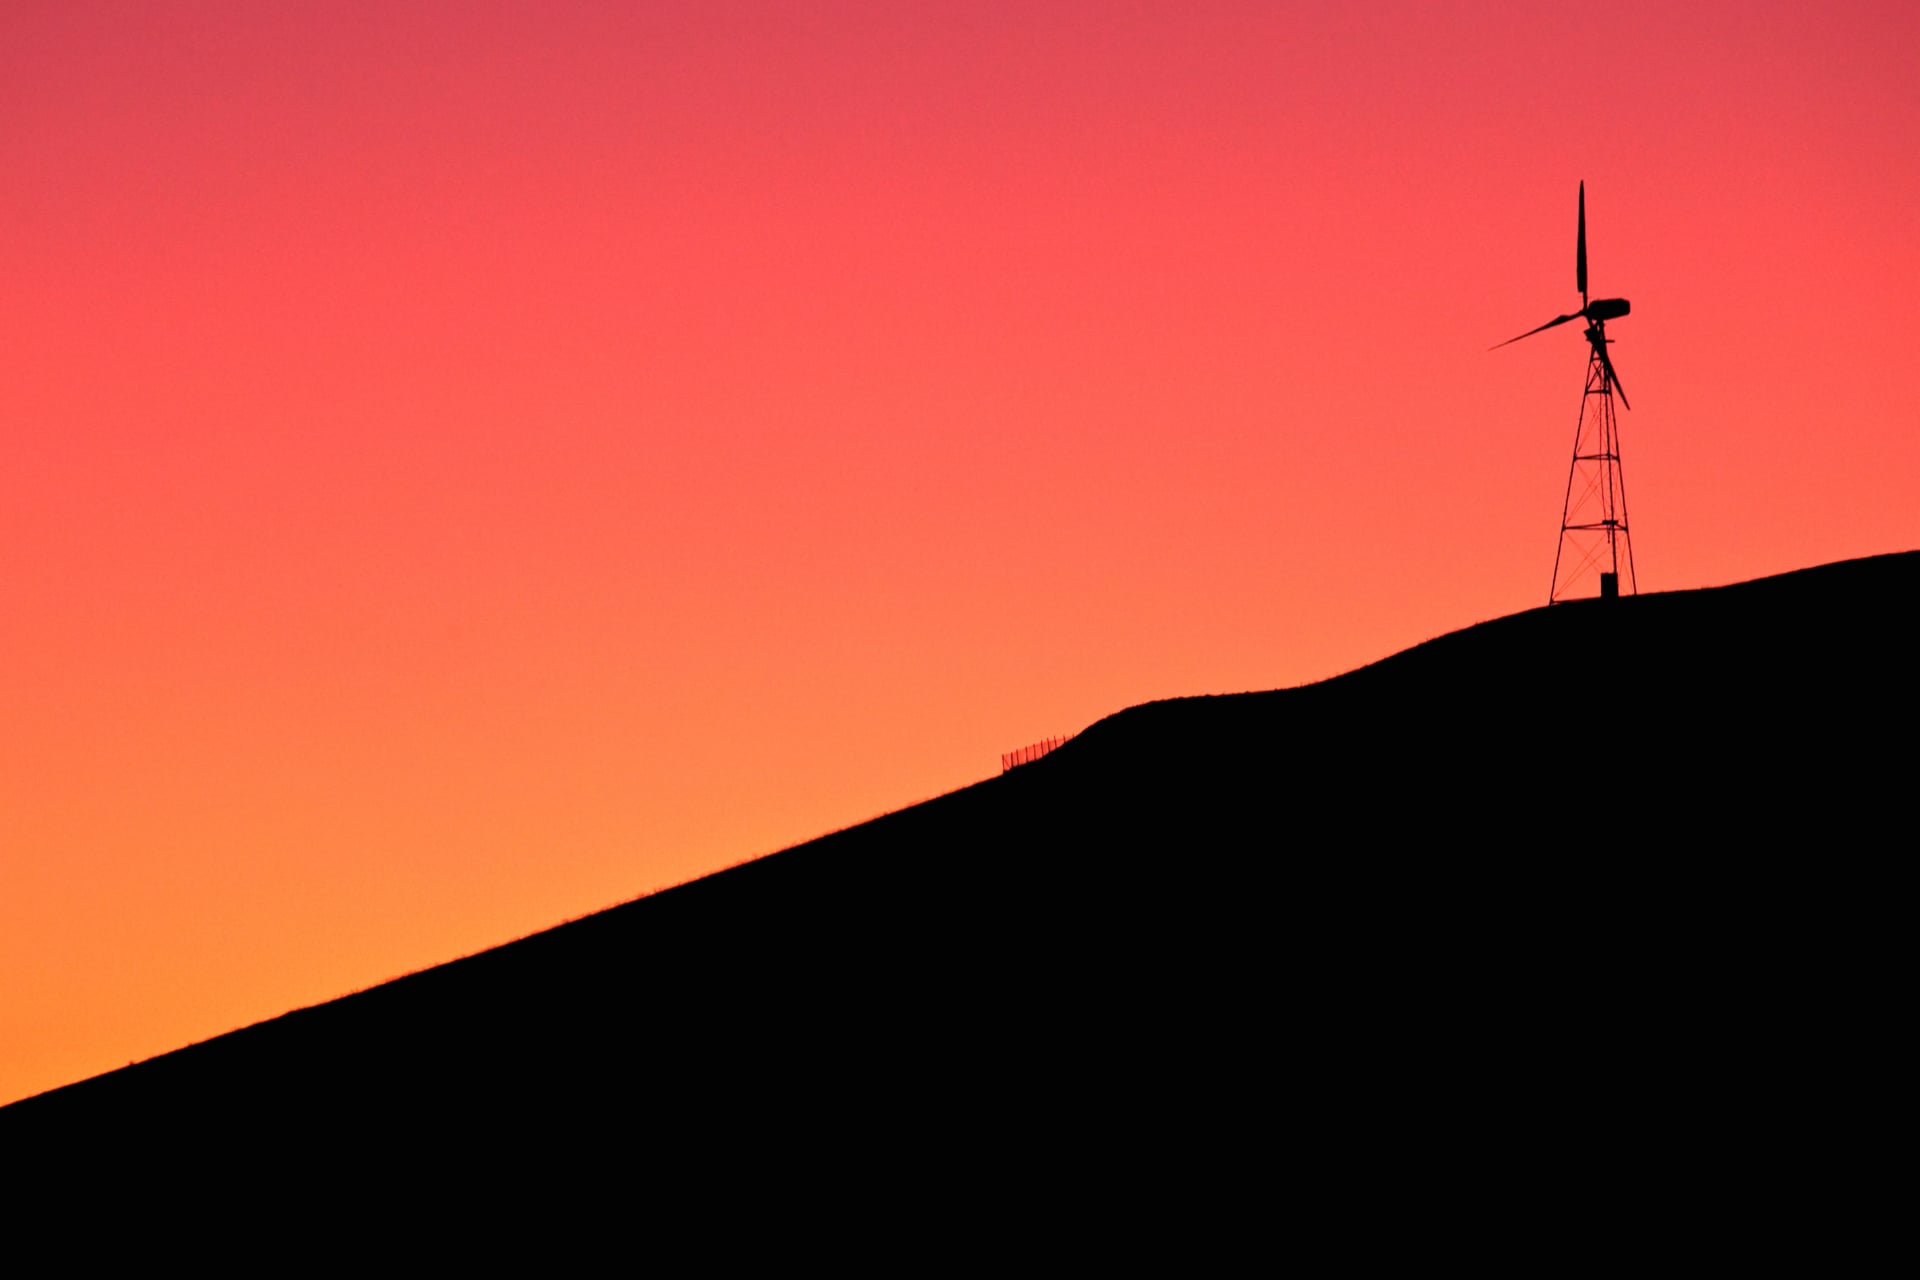 Digital Art Windmill at 1024 x 768 size wallpapers HD quality